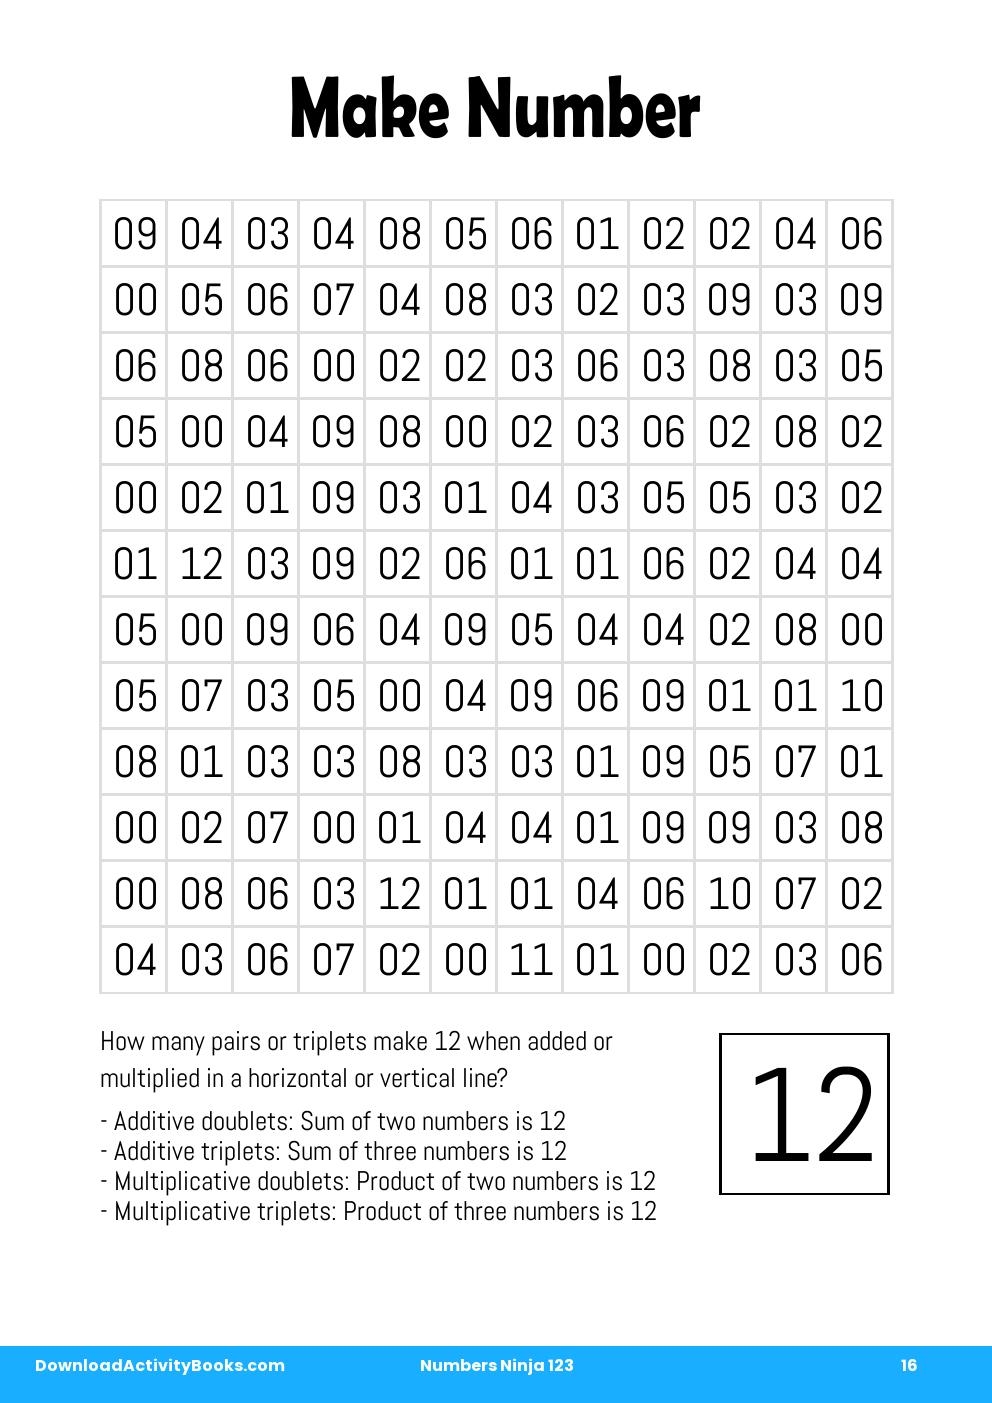 Make Number in Numbers Ninja 123